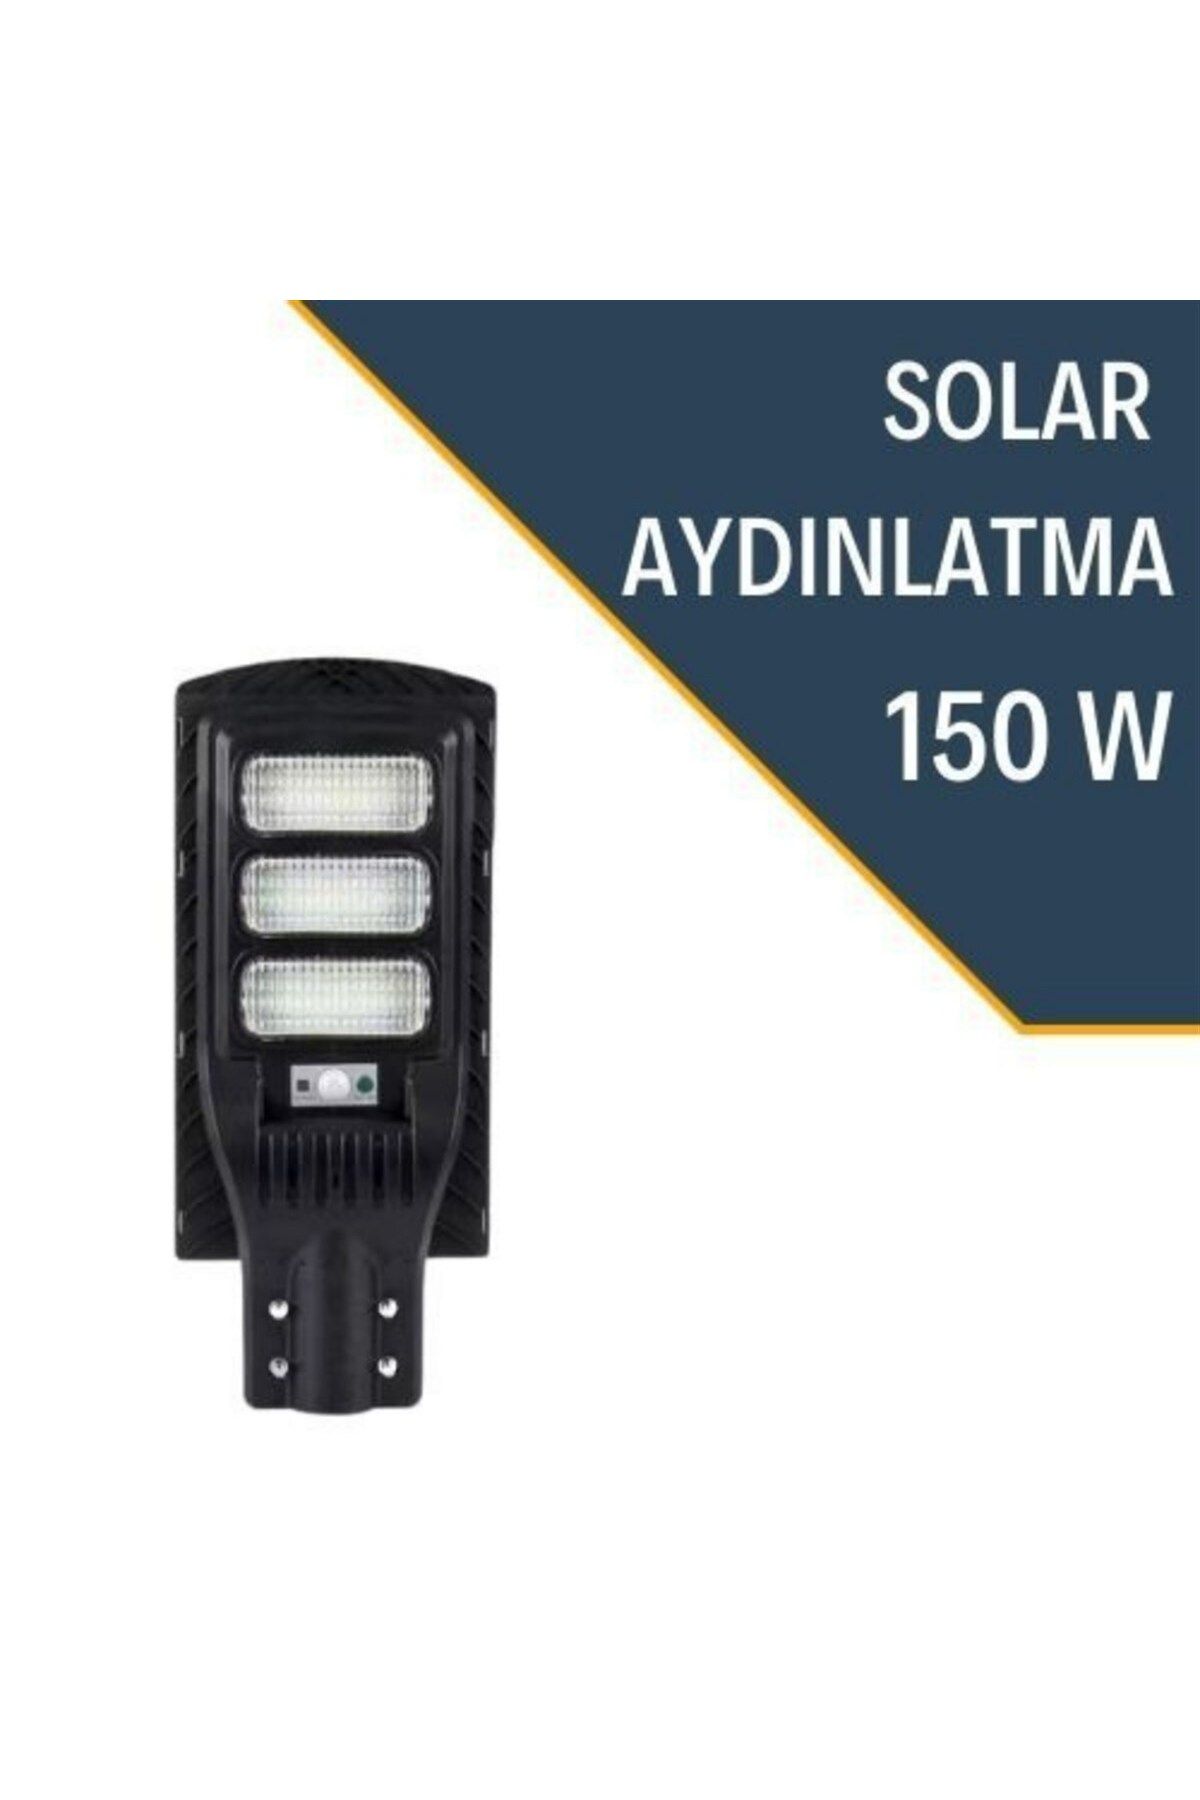 Lexron 150w Güneş Panelli Led Solar Aydınlatma Sensörlü Sokak Lambası(DİREK HARİÇ)